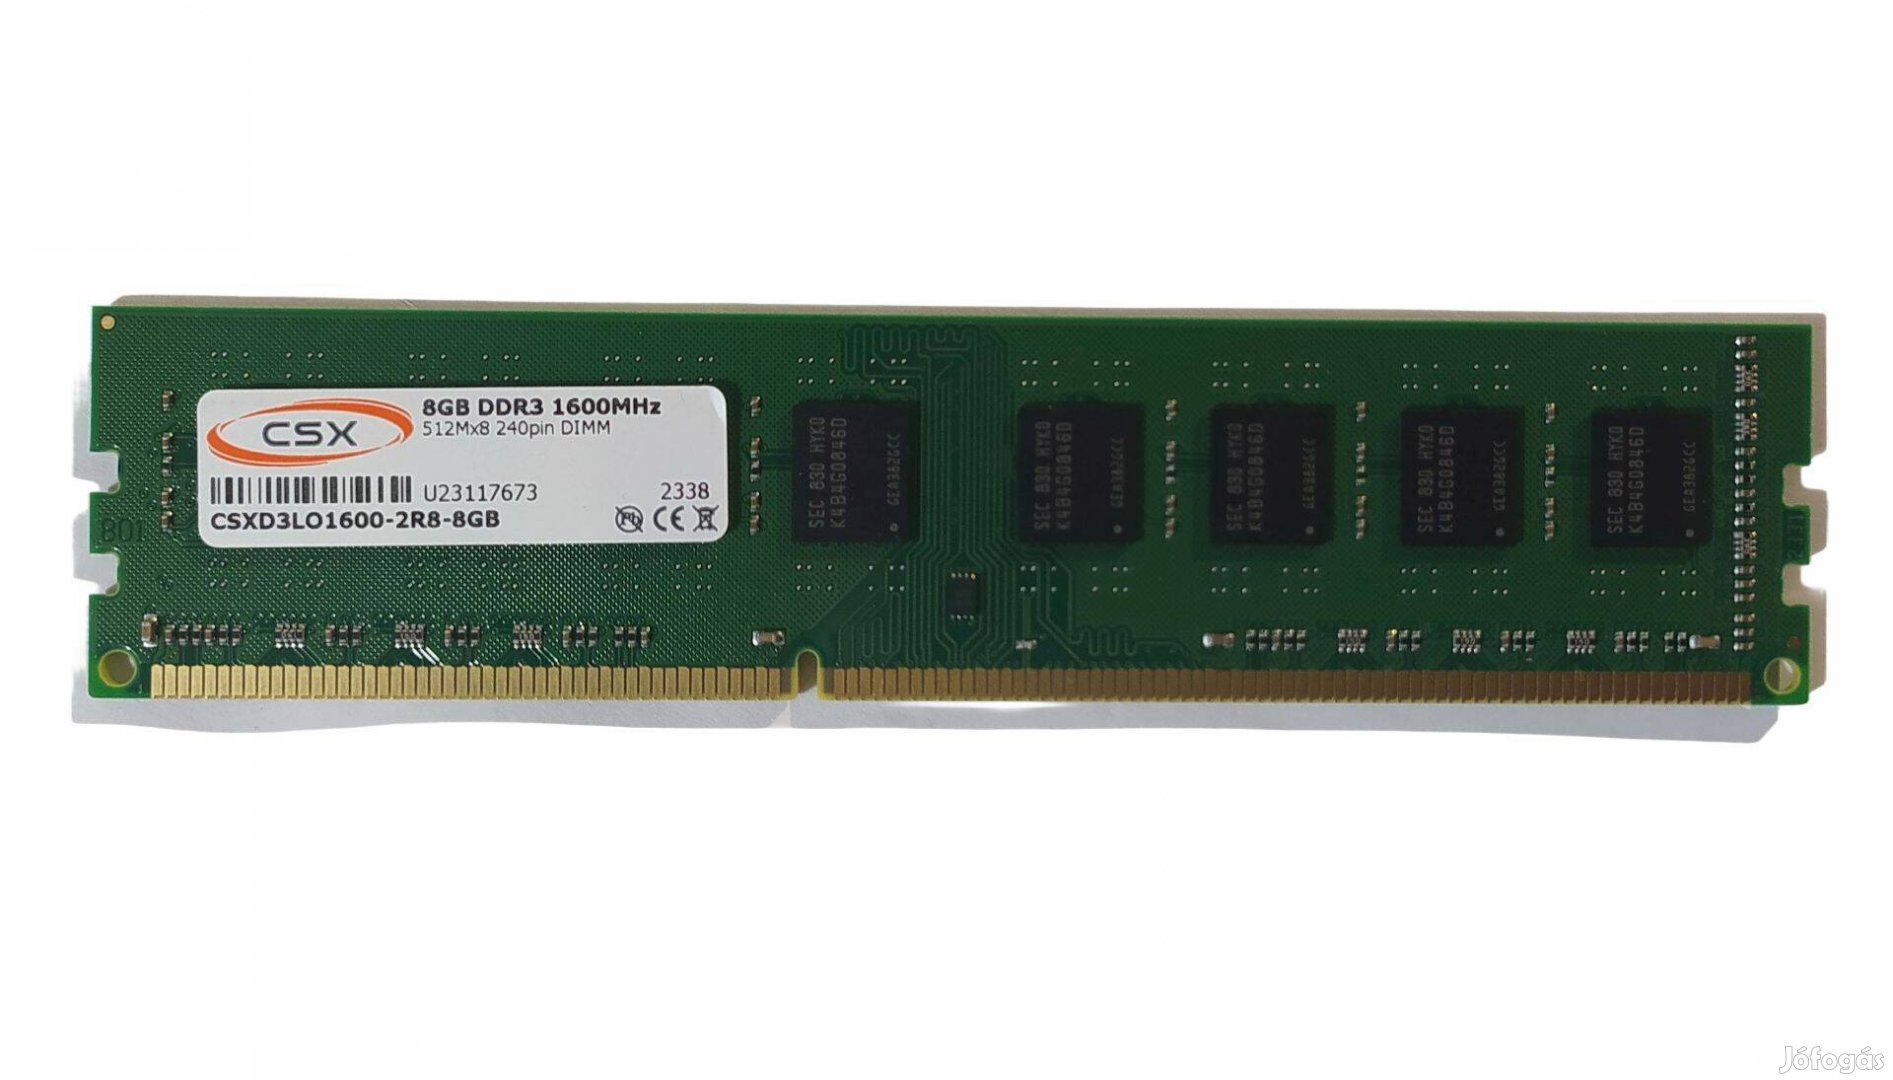 Csx 8GB DDR3 1600MHz memória